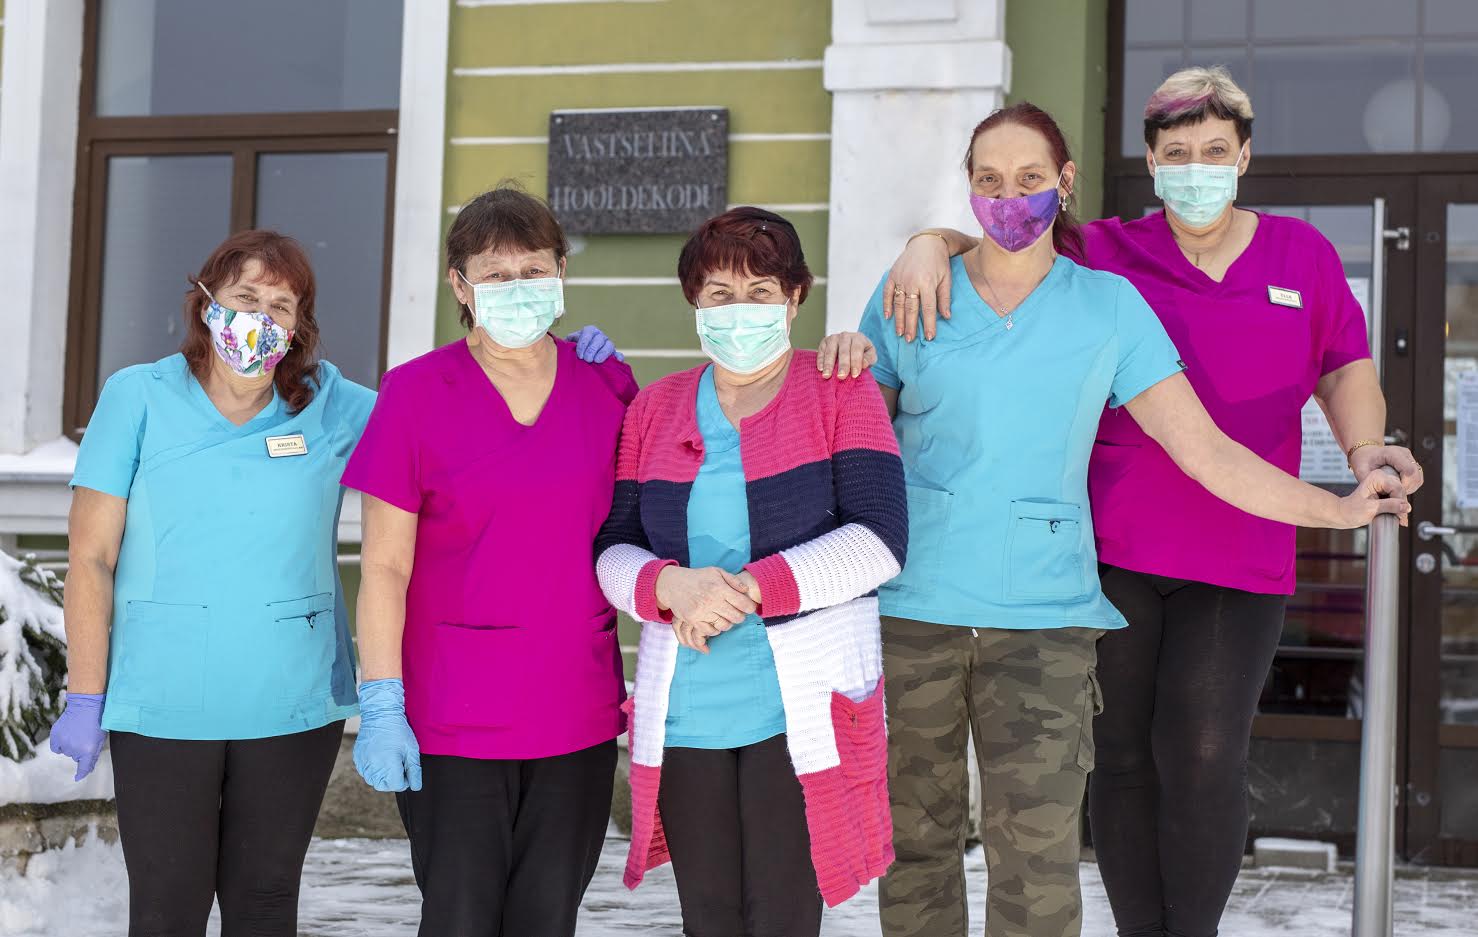 Vastseliina hooldekodu töötajad Krista Kiidma (vasakult), Tiiu Zirk, Maie Verhogljadova, Tiina Pavlova ja Ülle Ülenurm loodavad, et uuel nädalal saadakse vaktsiinid tellitud ja asutakse vaktsineerima. Foto: AIGAR NAGEL